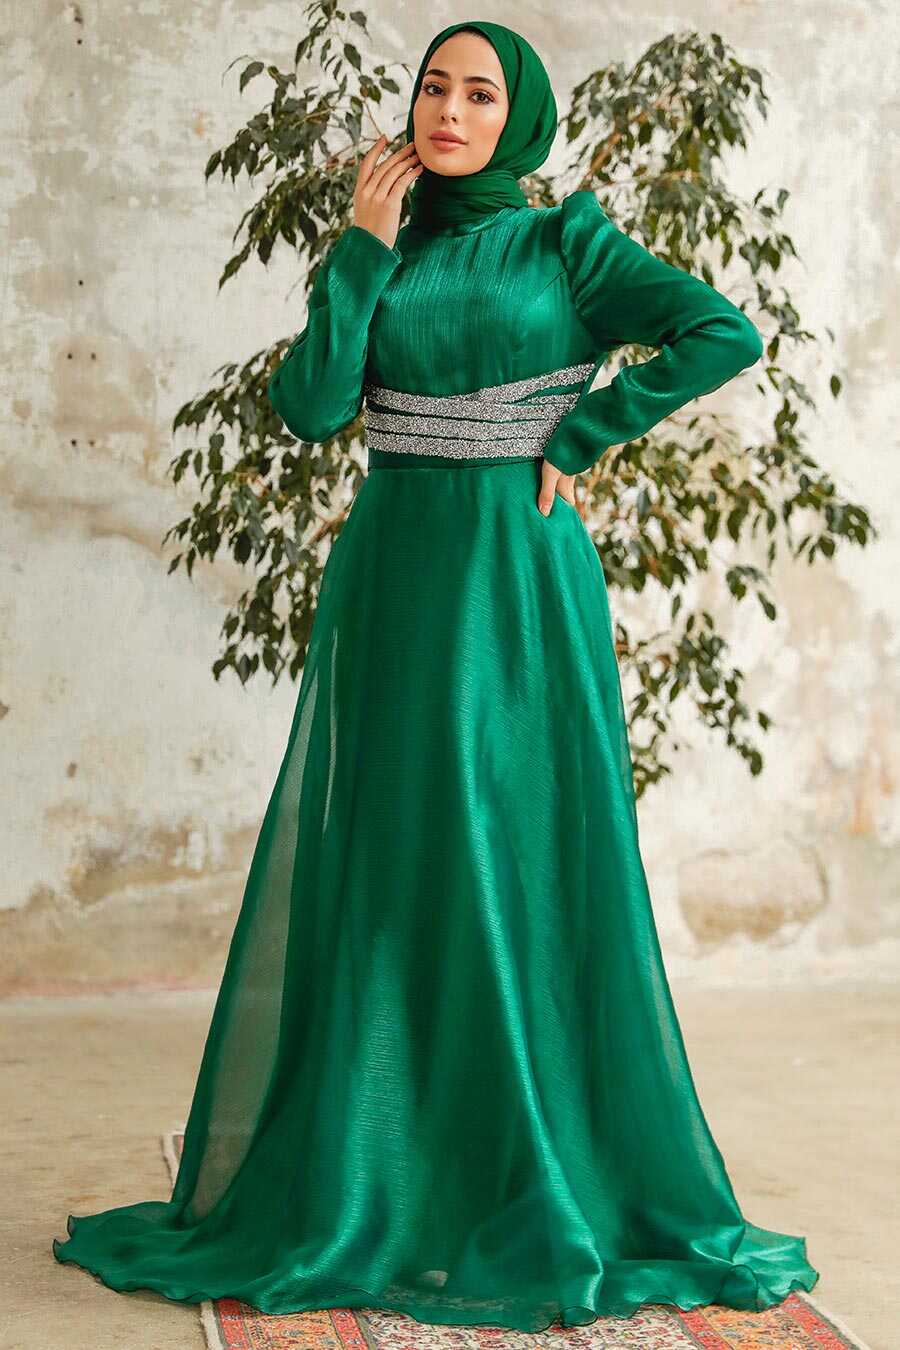 Neva Style - Elegant Green Muslim Fashion Wedding Dress 3812Y